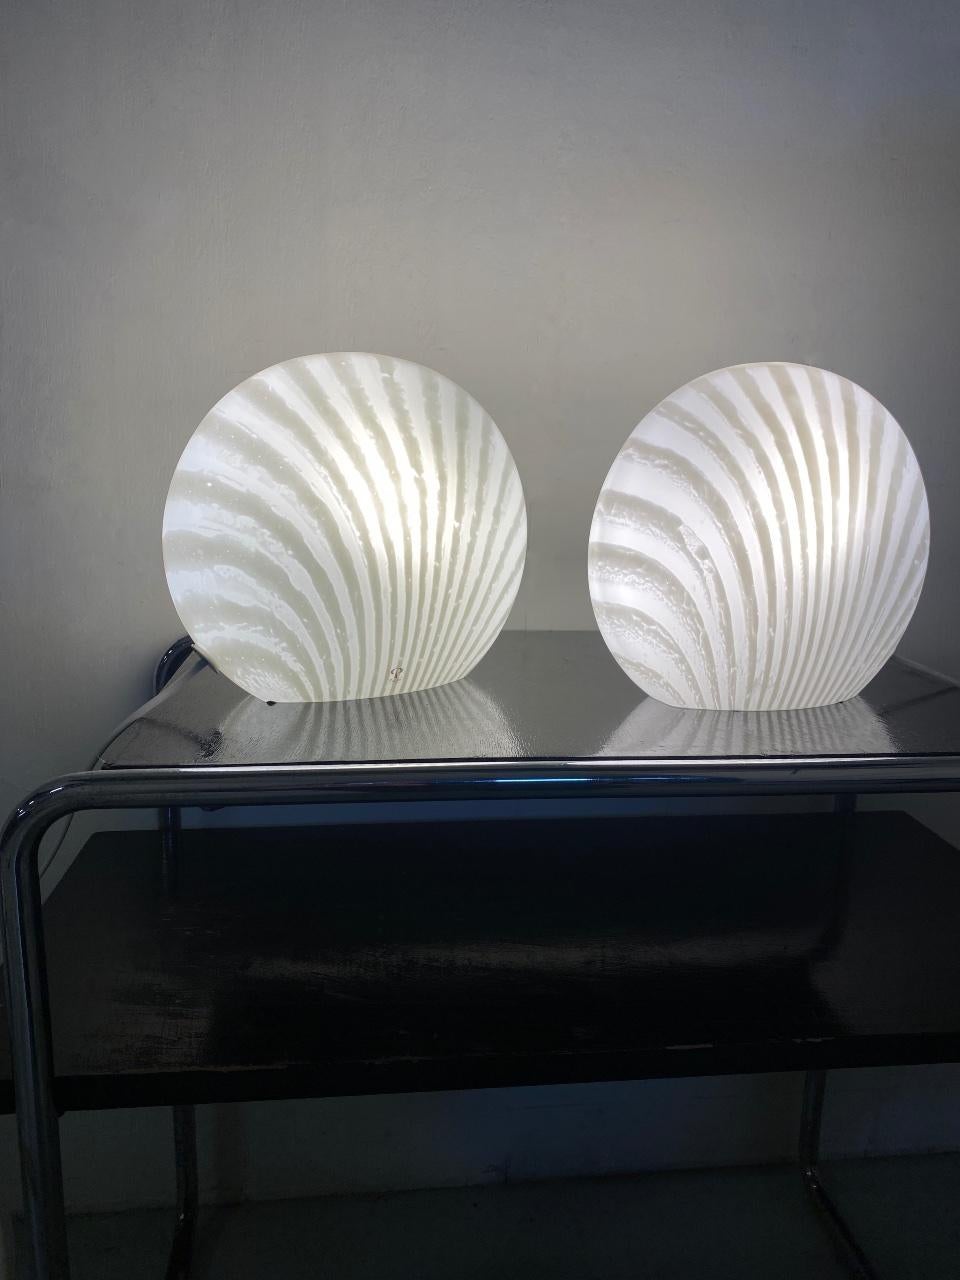 Lampes de table magiques et élégantes à motif zébré. Les lampes sont fabriquées par le célèbre fabricant allemand Peill Putzler. Ils sont fabriqués en une seule pièce en verre soufflé à la bouche de haute qualité. 

Vous pouvez les placer dans votre